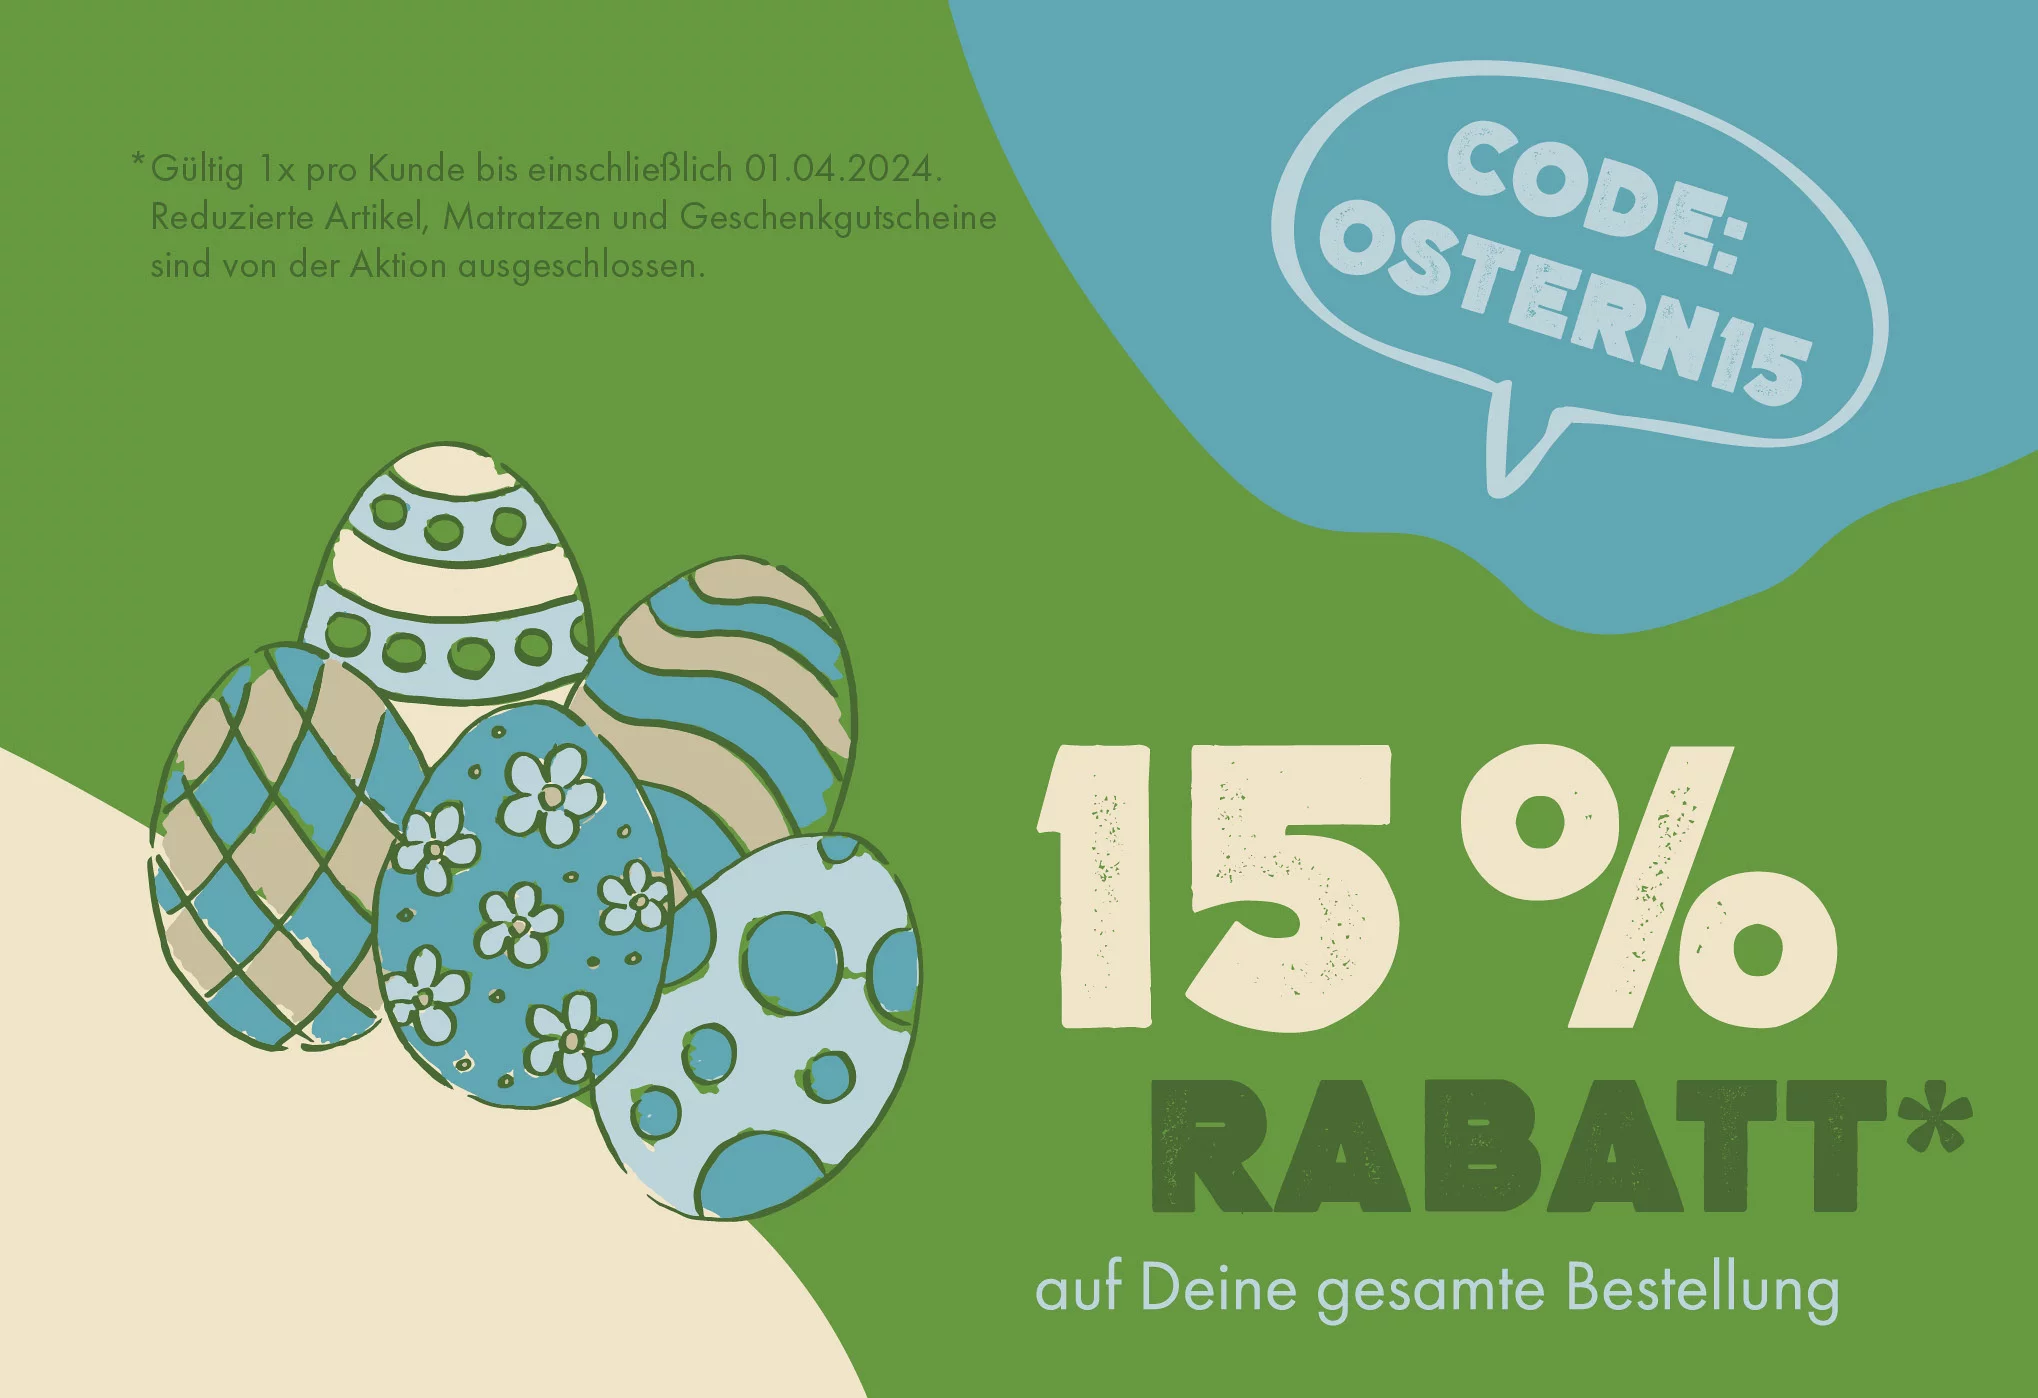 Frohe Ostern!
Für noch mehr Feiertagsfreude: Wir schenken Dir 15 % Rabatt* auf Ihre gesamte Bestellung mit dem Code OSTERN15.